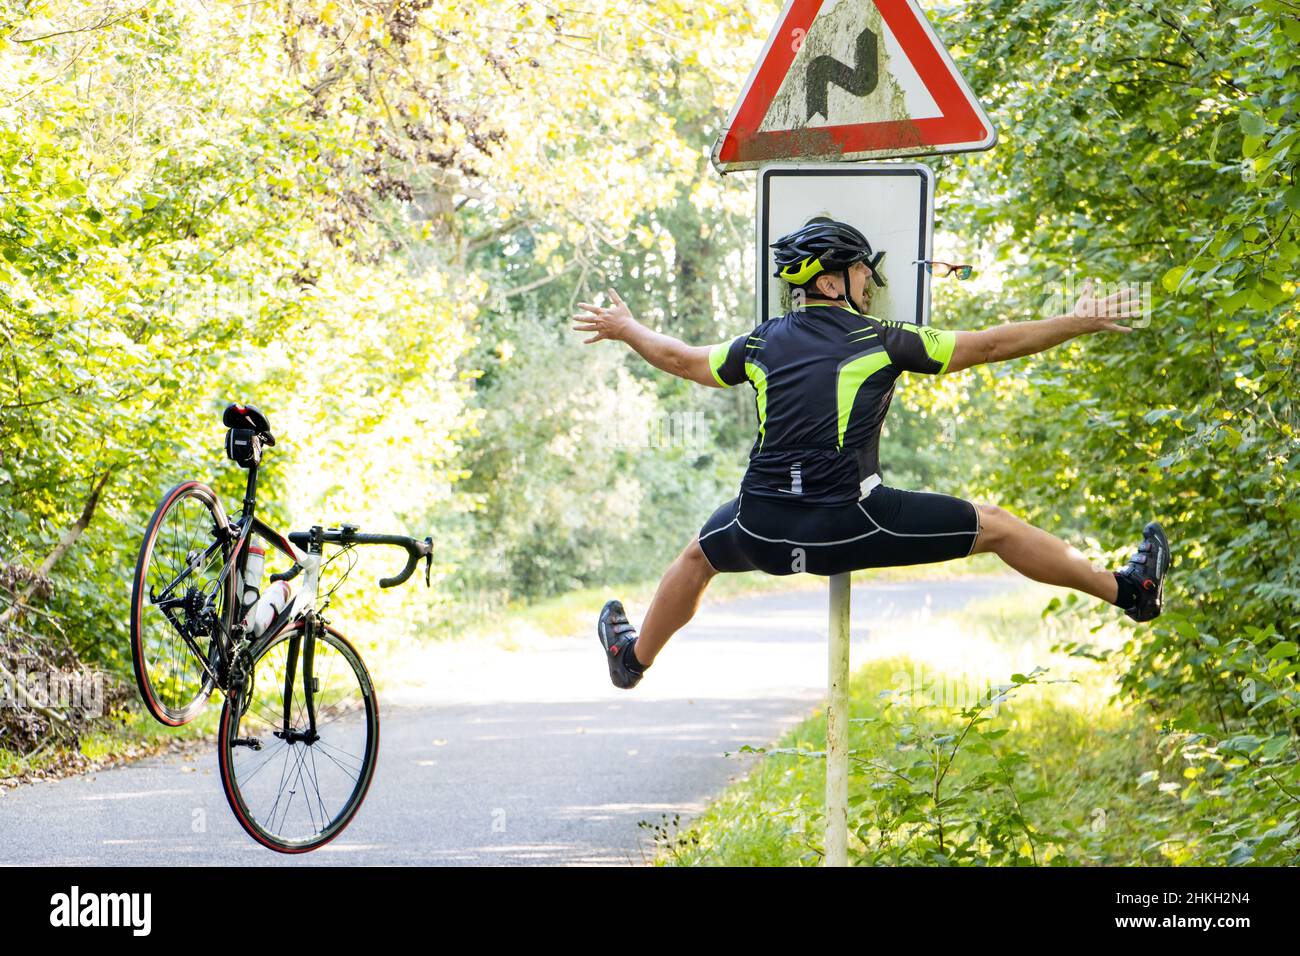 Un cycliste qui tombe heurte un panneau de signalisation indiquant qu'il y a une route dans les virages. Banque D'Images